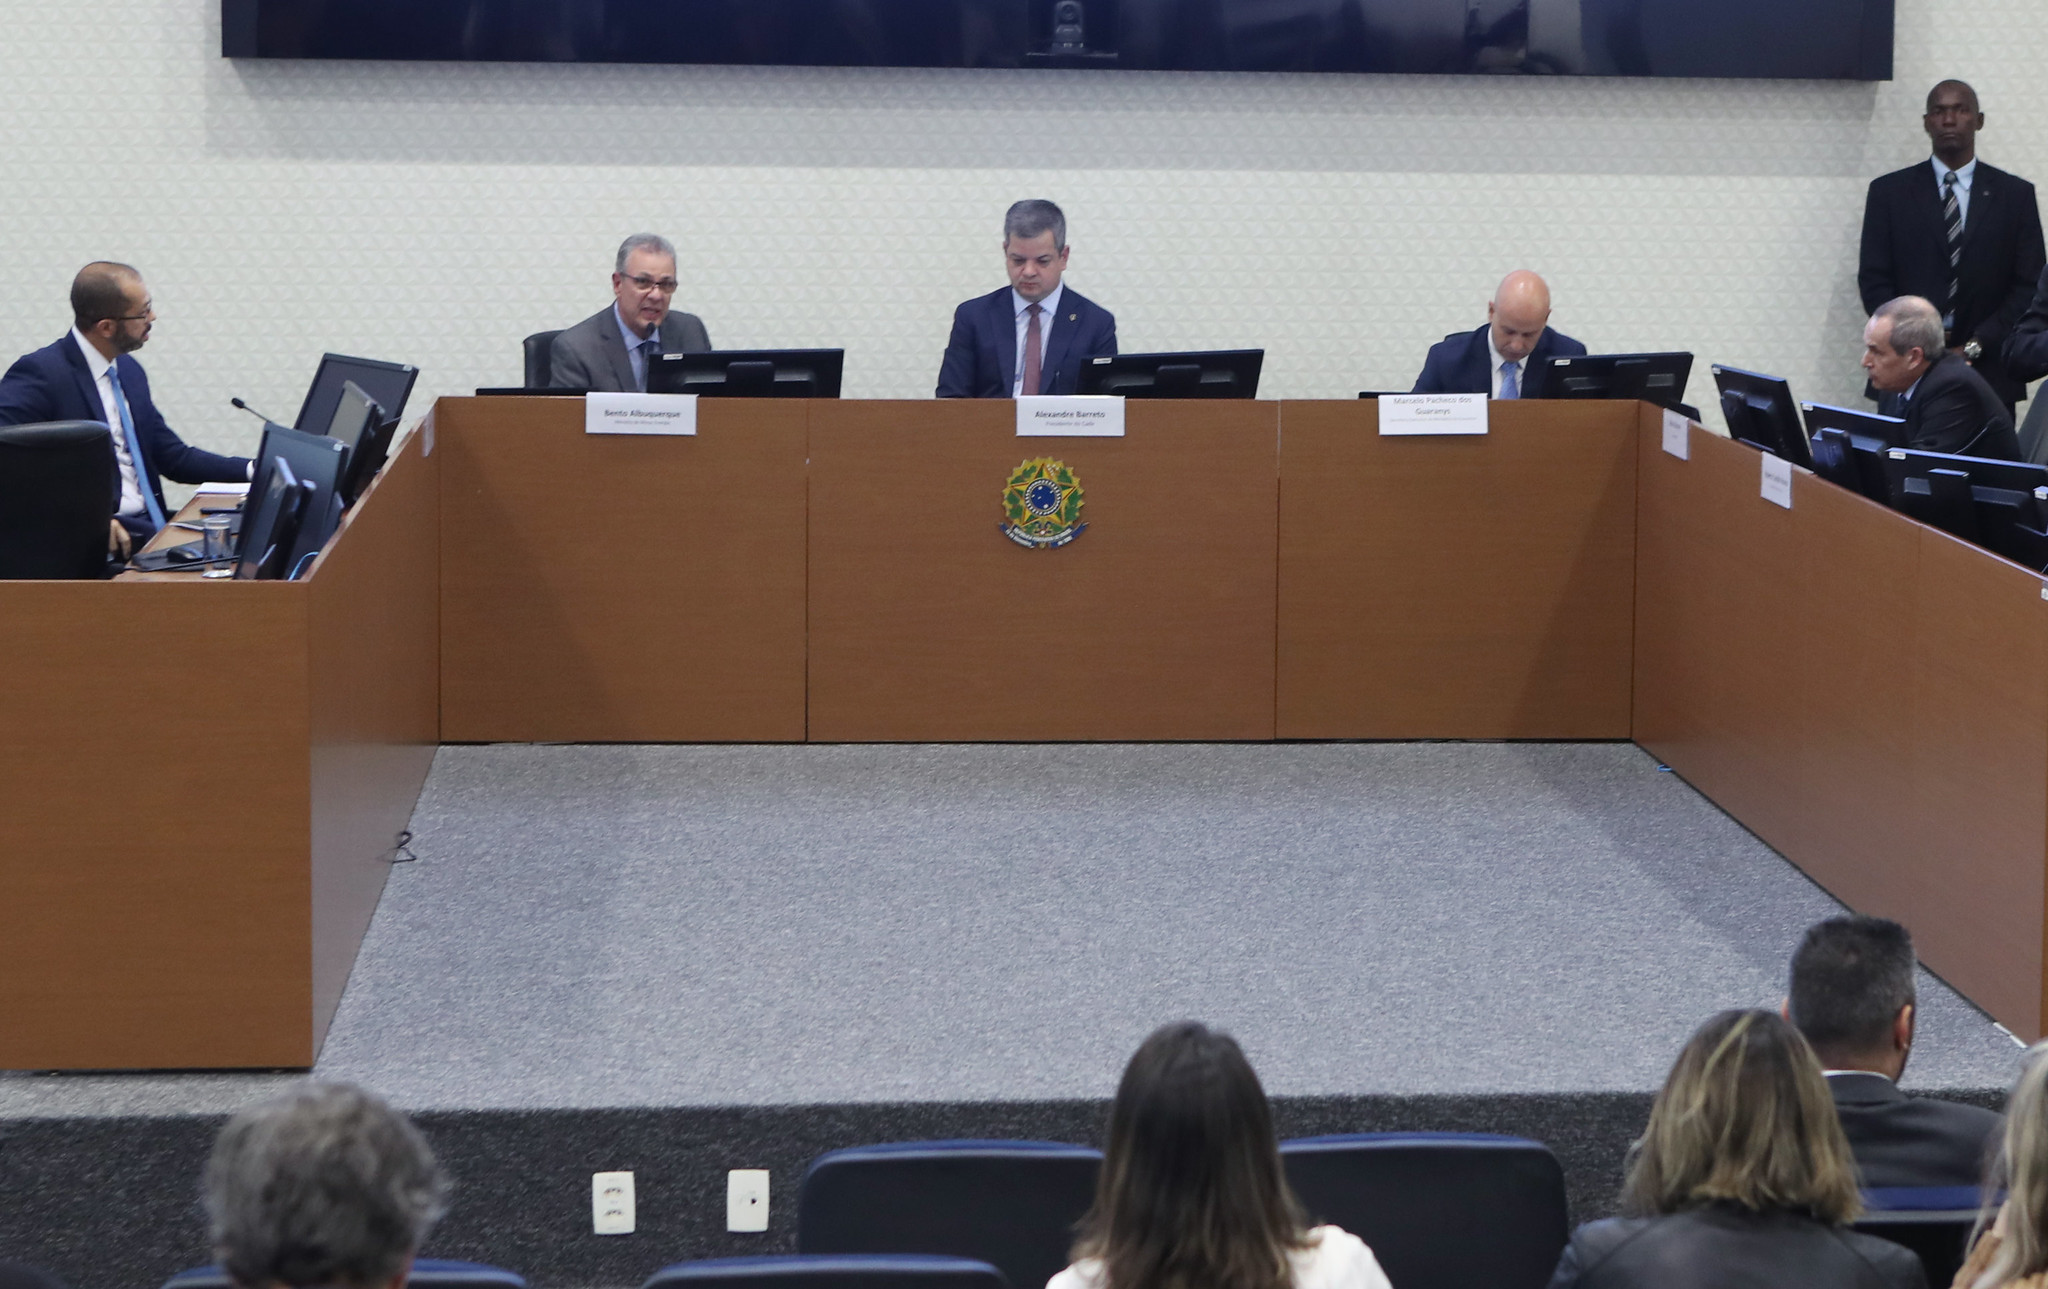 Brasília,08/07/2019: Bento Albuquerque, ministro de Minas e Energia participa de Sessão Ordinária de Julgamento do Conselho Administrativo de Defesa Econômica - Cade.